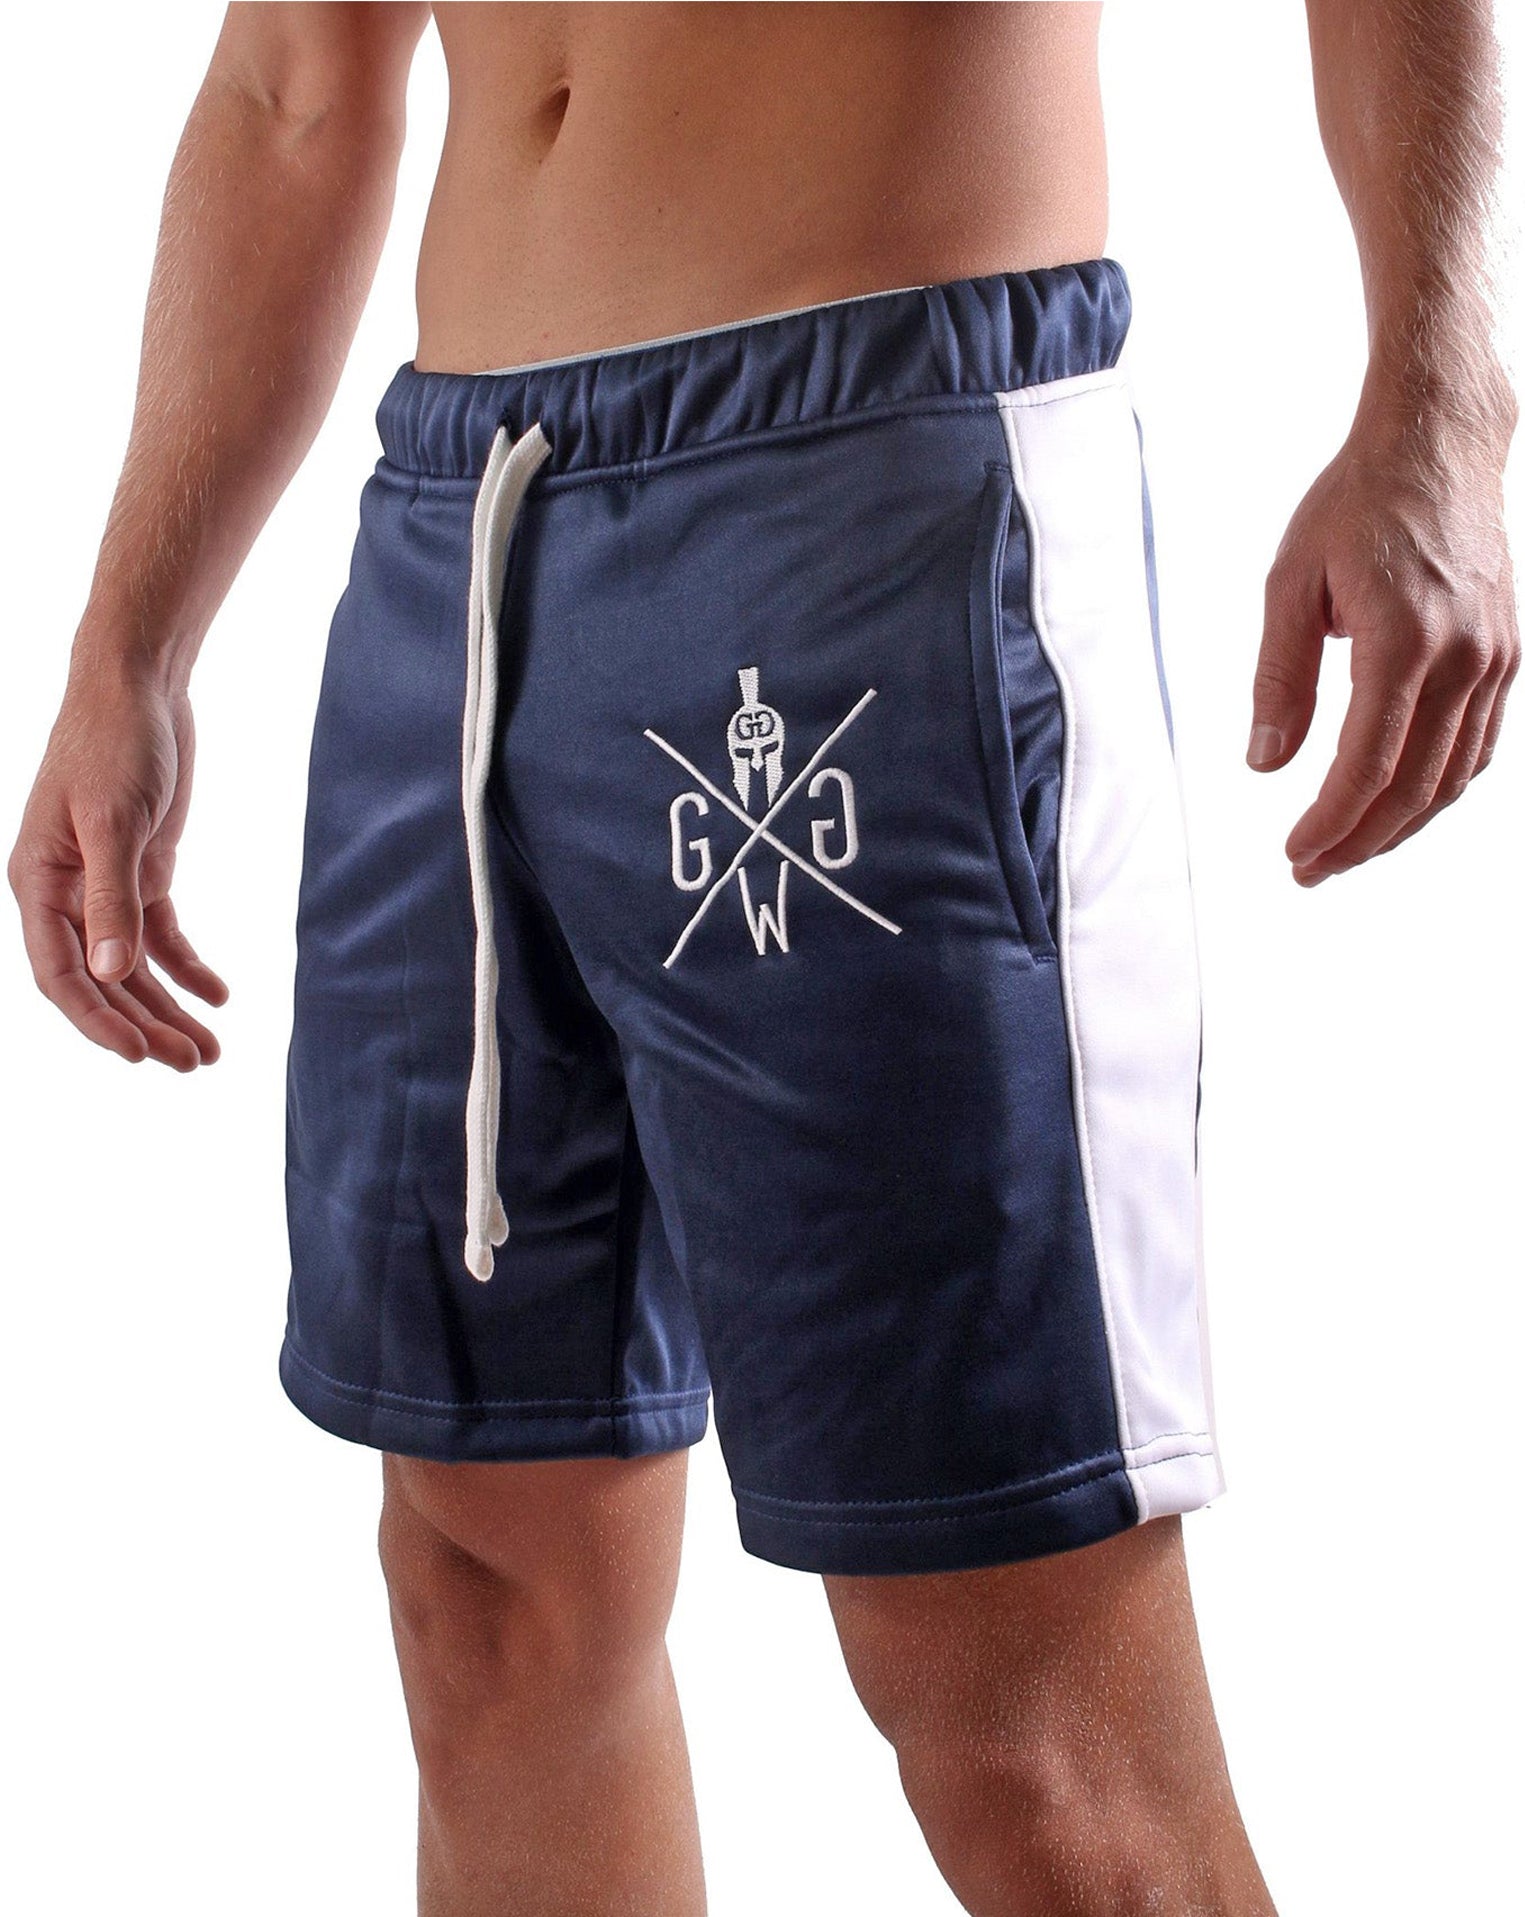 Bequeme und funktionale Sport Shorts von Gym Generation, mit elastischem Bund und Kordelzug für individuelle Passform.